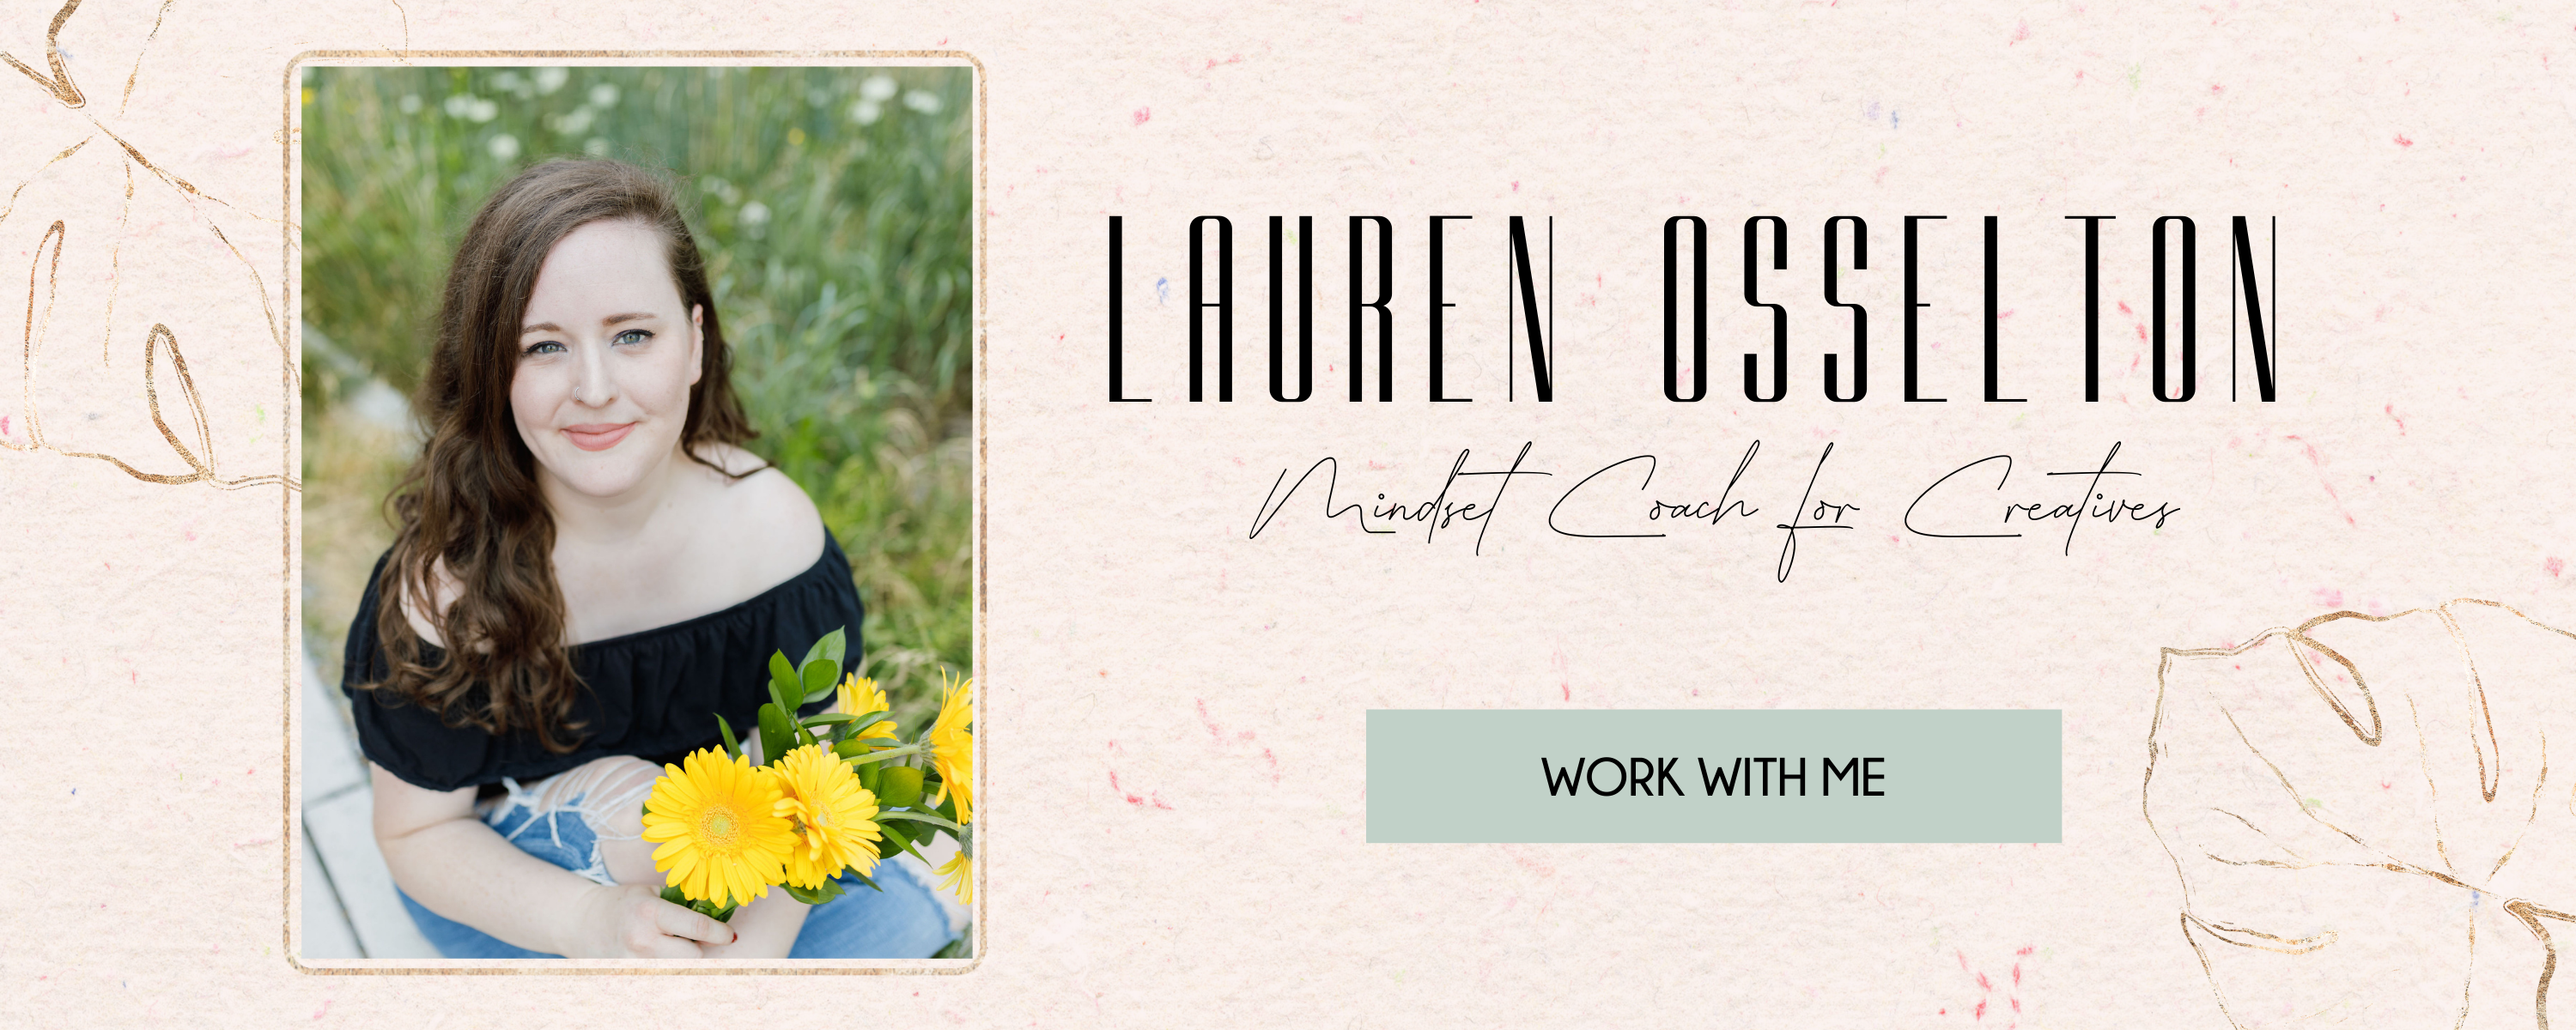 Lauren Osselton - Mindset Coach for Creative Entrepreneurs